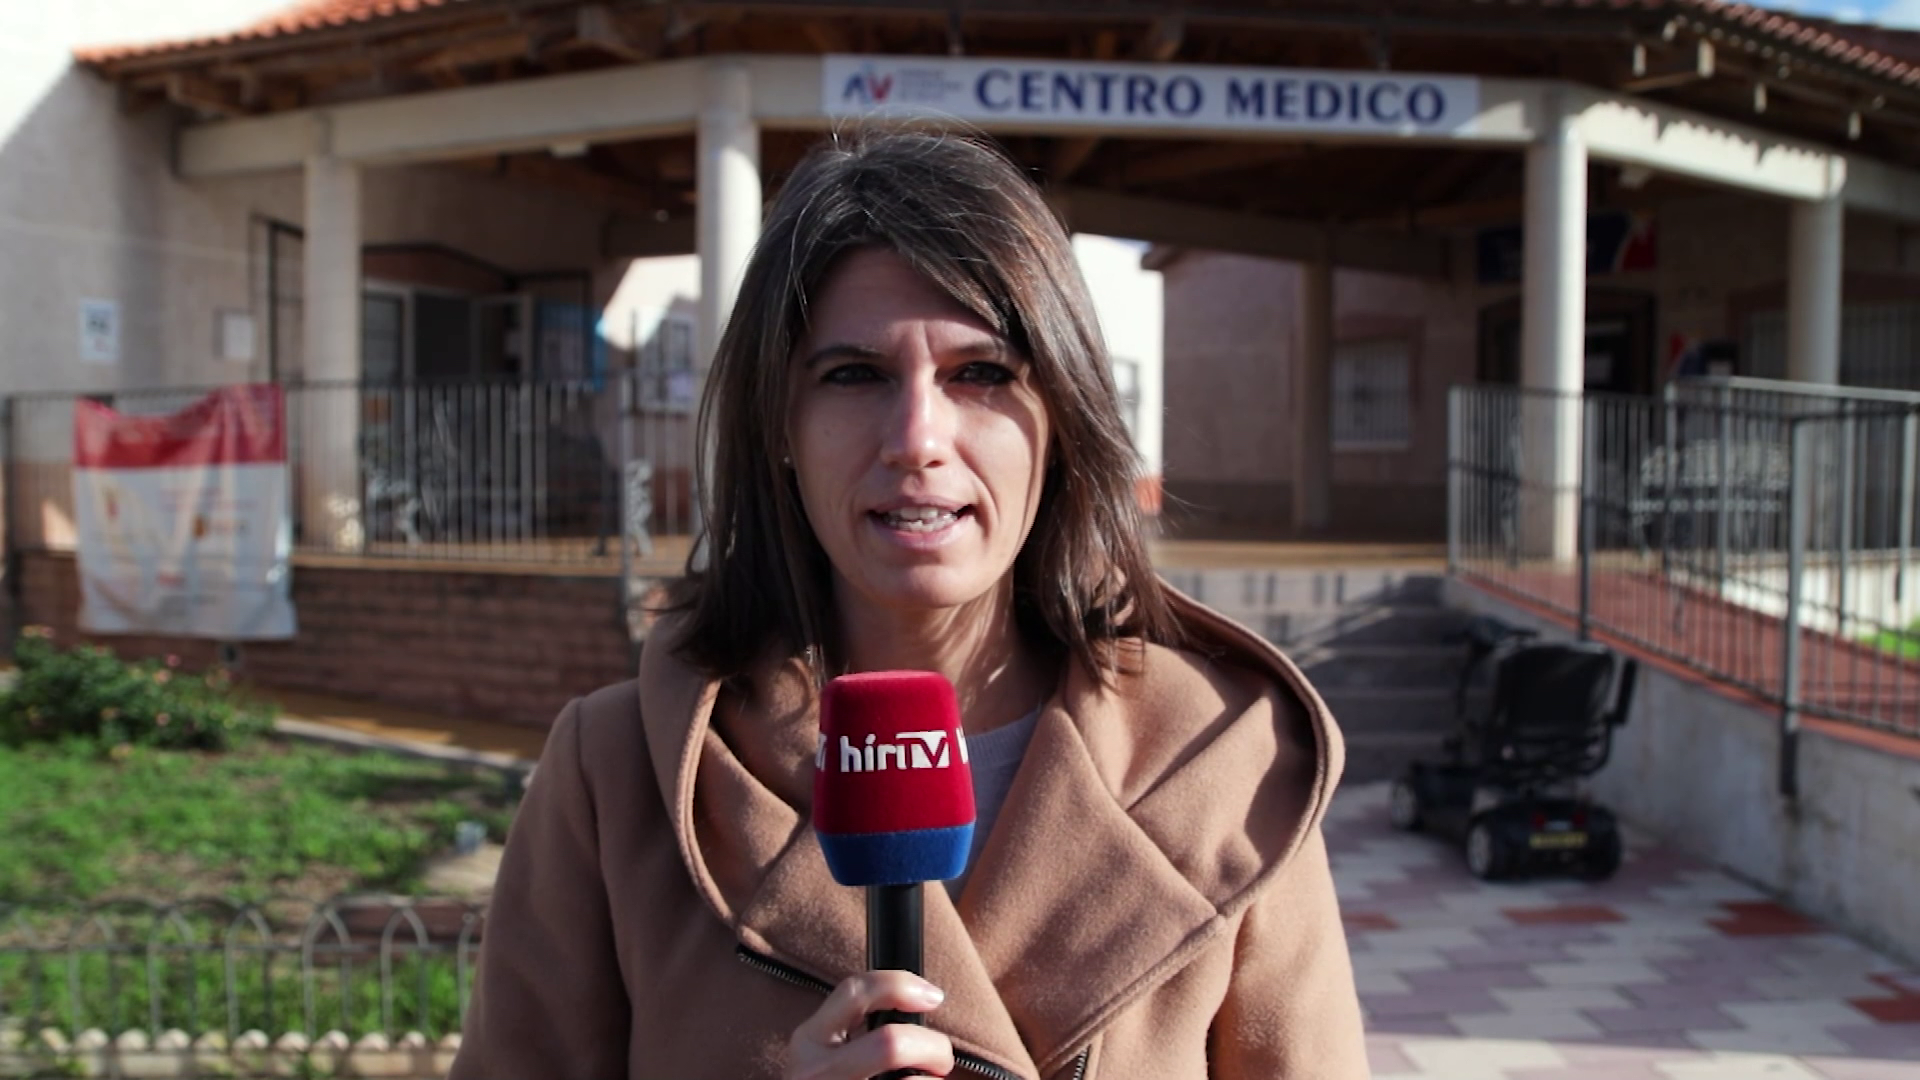 Sikeres az oltási kampány Madridban